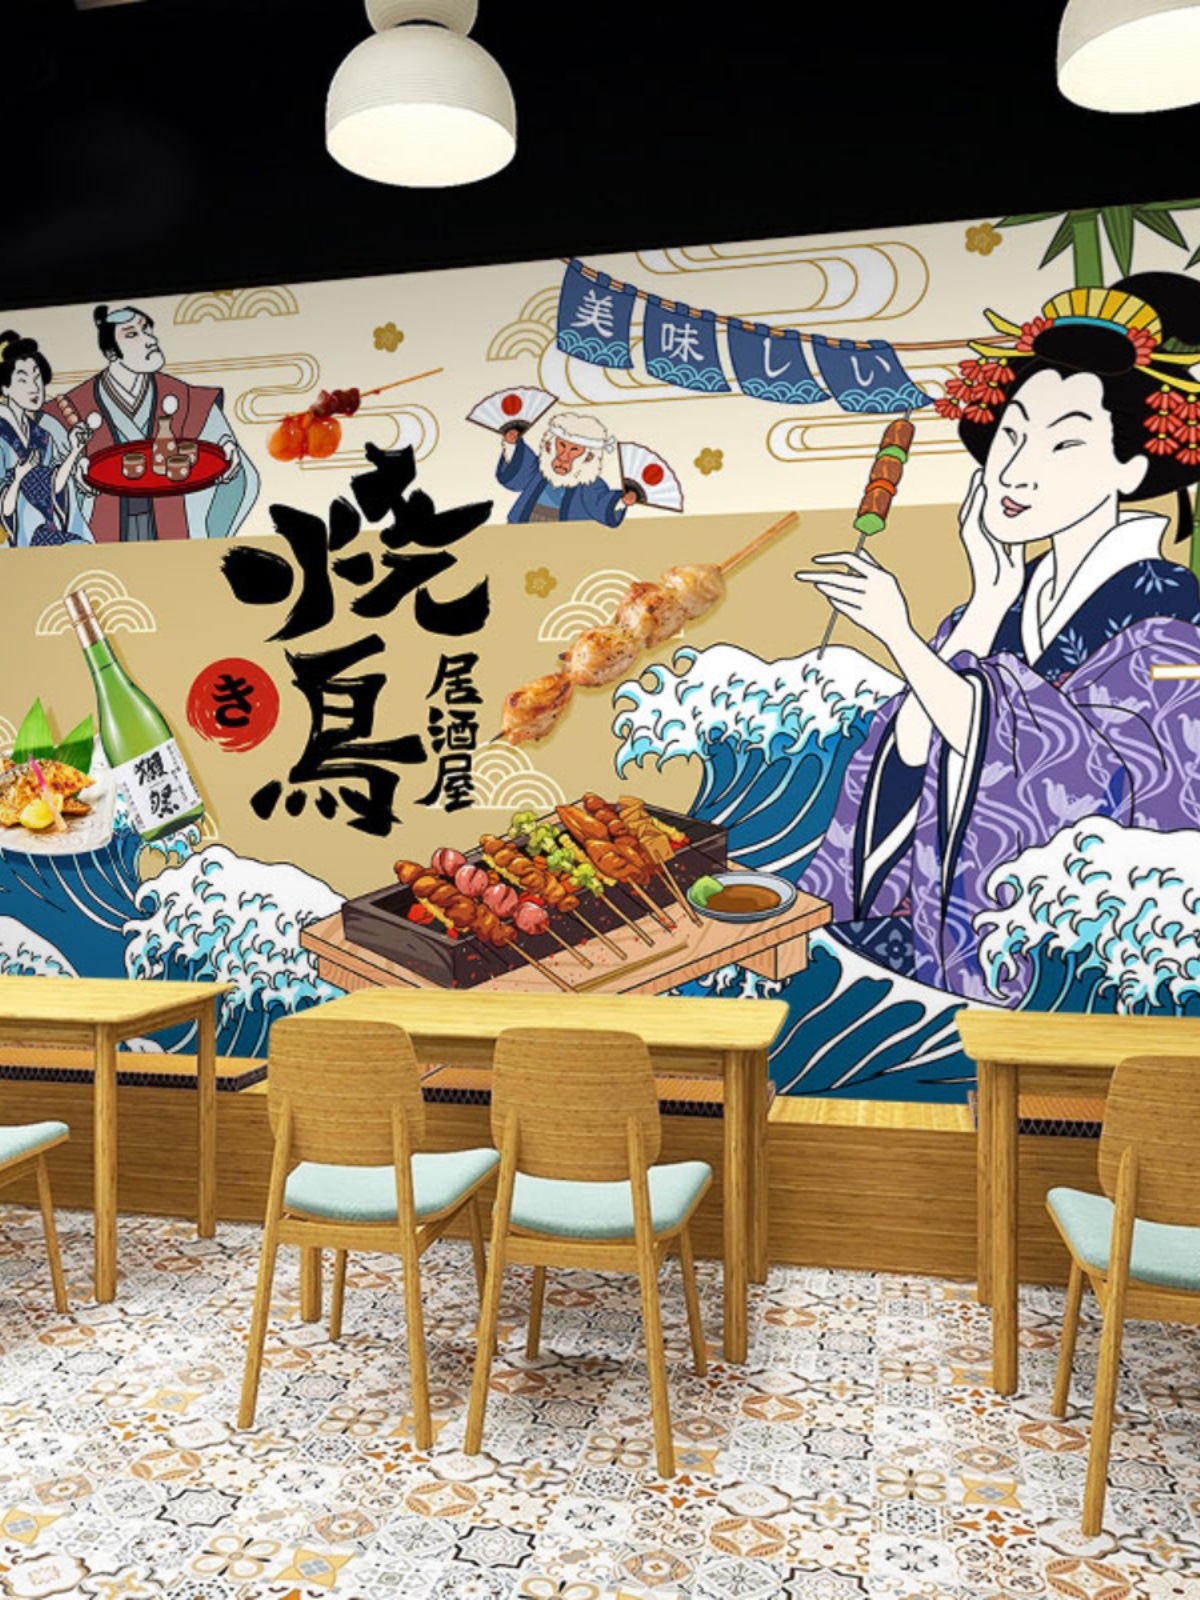 日式屋酒屋墙纸日本烧鸟宣传图片广告牌海报背景装饰画日料店壁纸